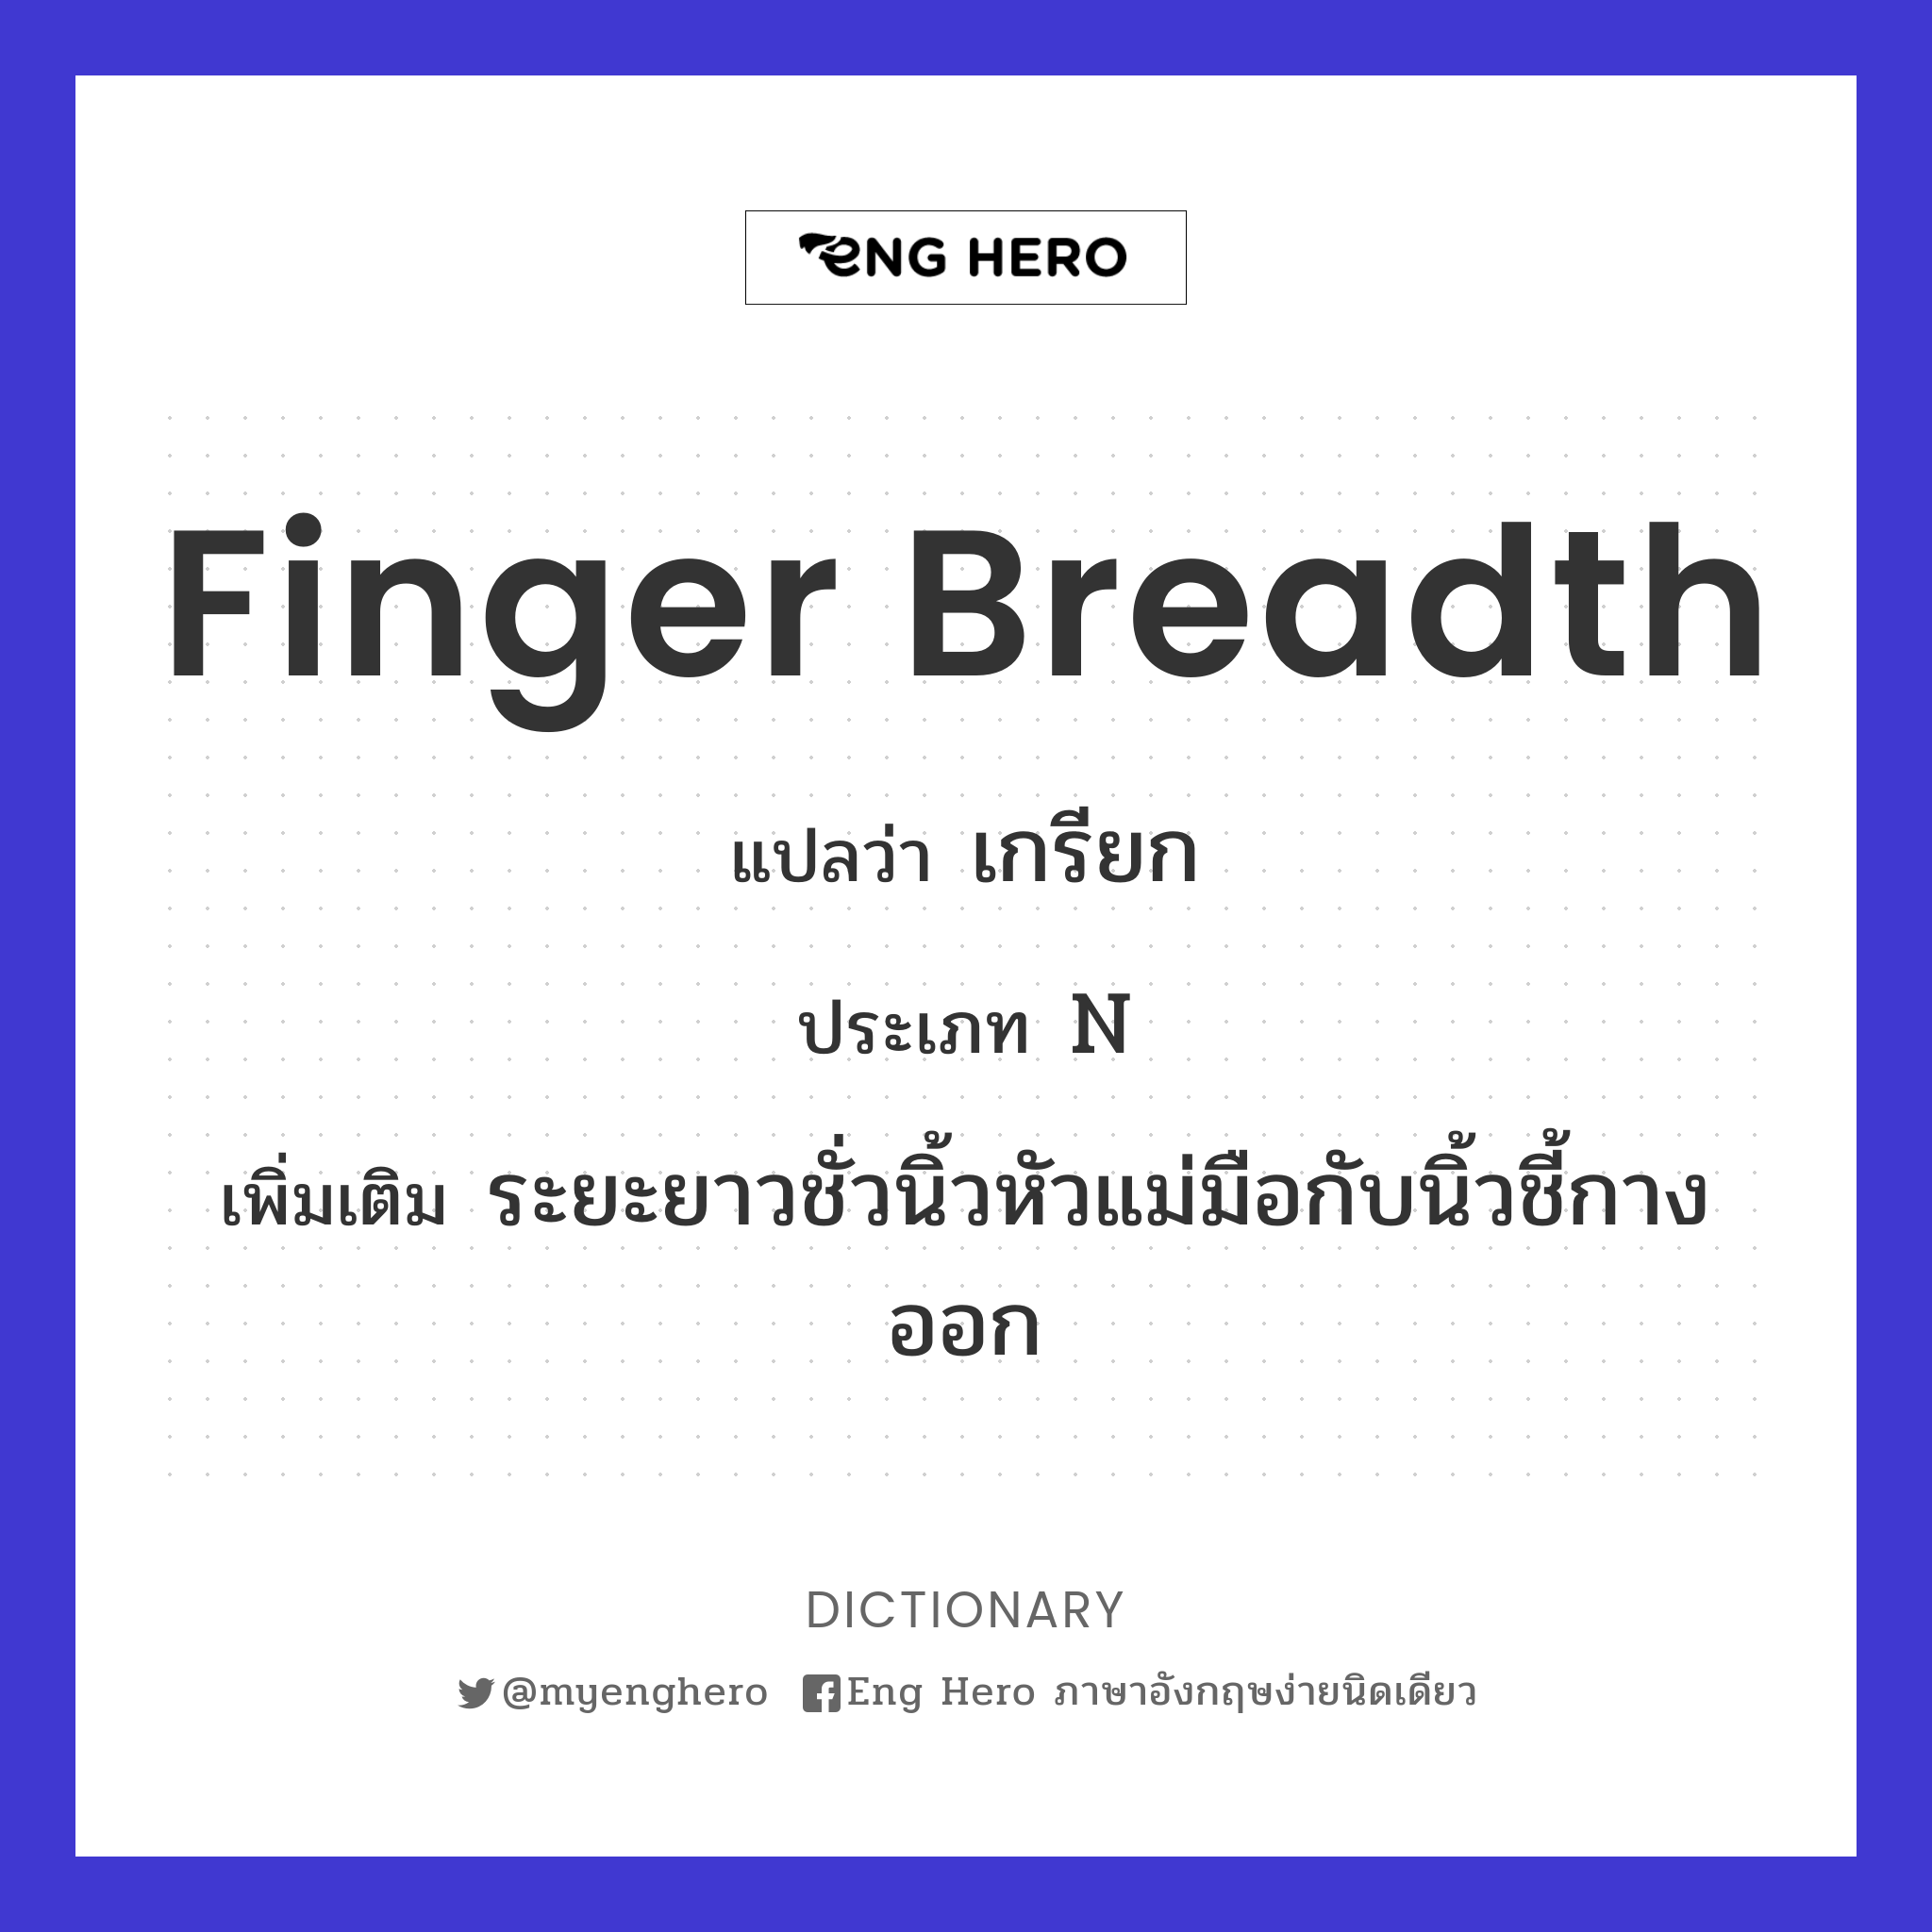 finger breadth